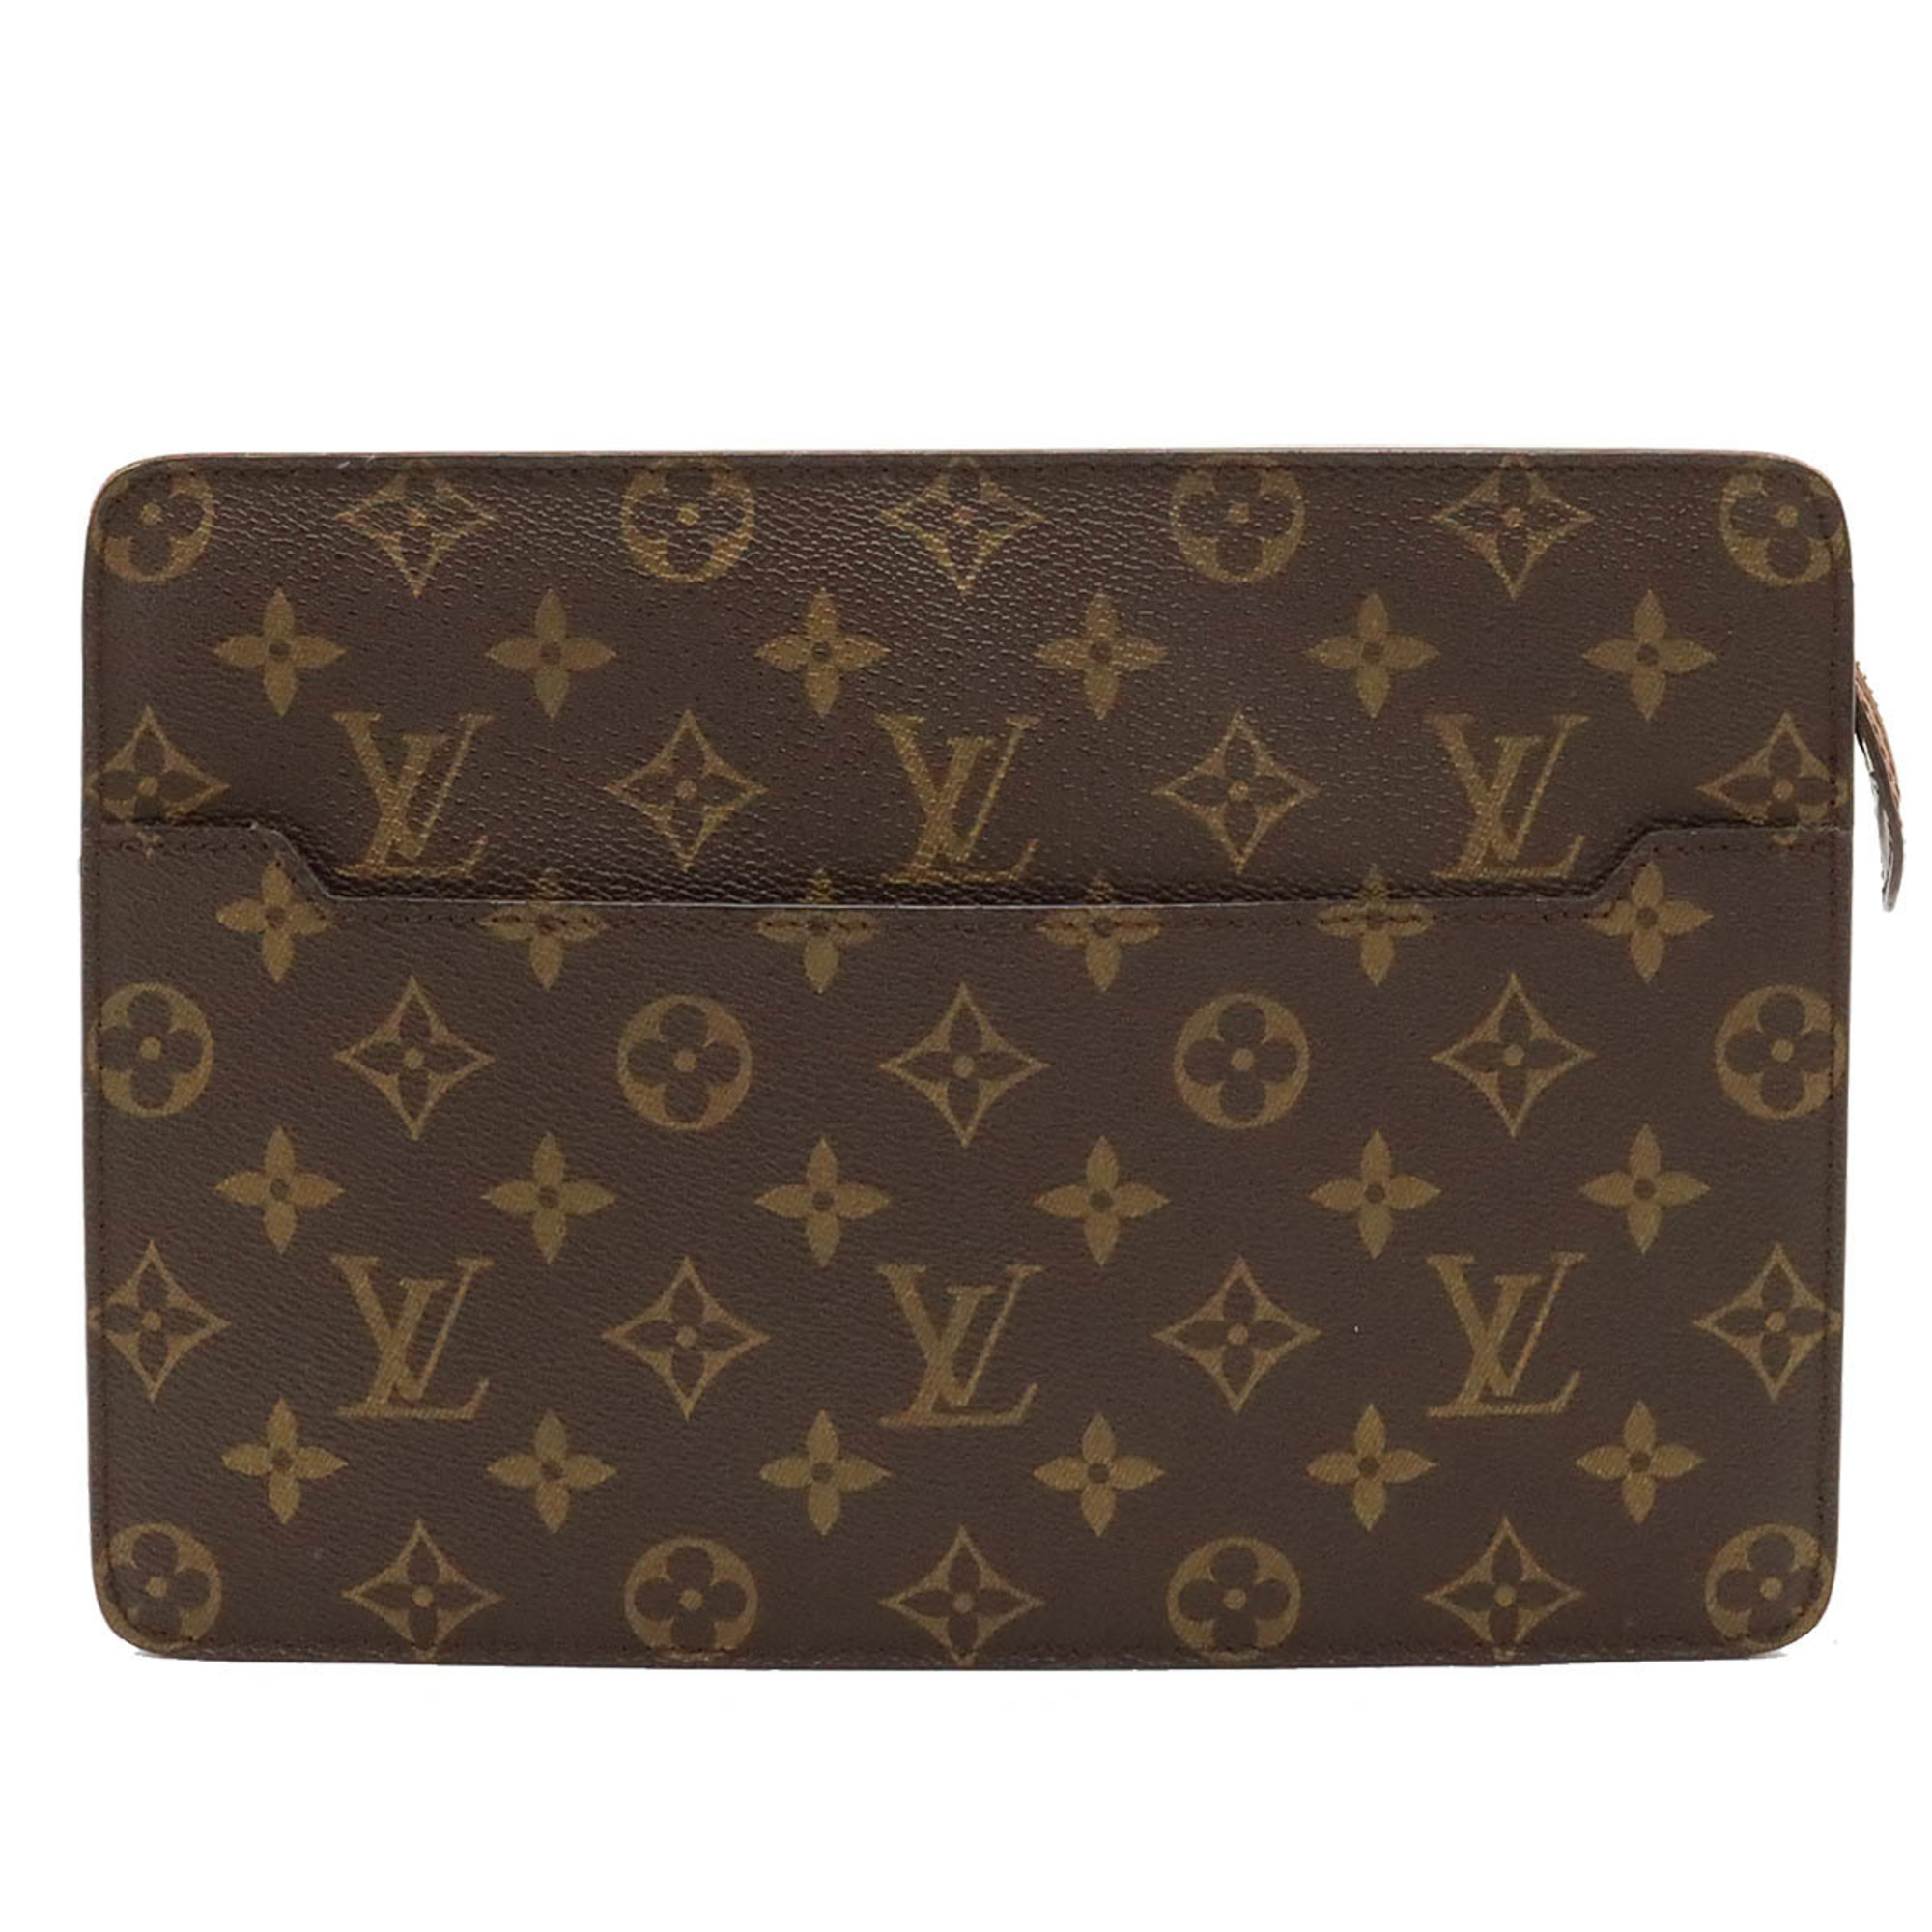 LOUIS VUITTON Louis Vuitton Monogram Pochette Homme Second Bag Clutch M51795